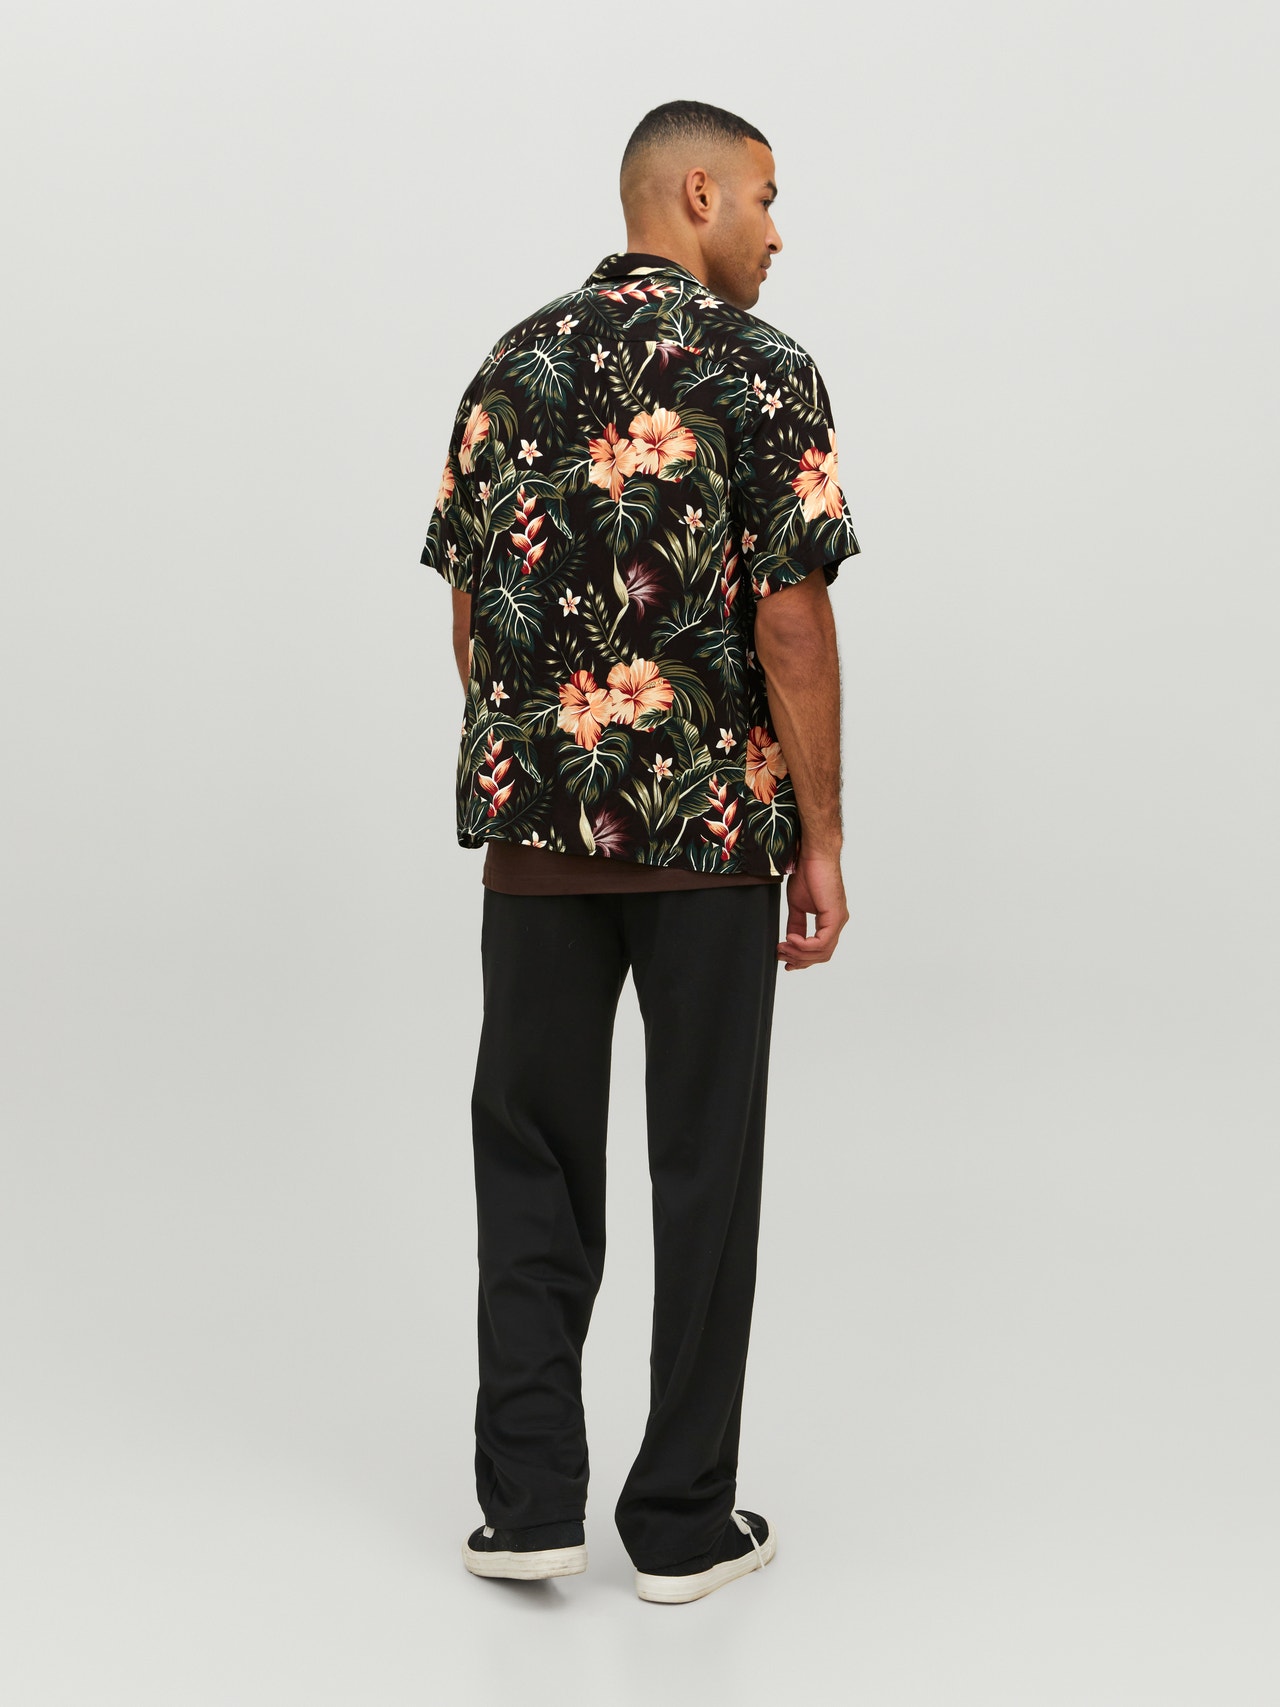 Jack & Jones Relaxed Fit Hawaii skjorte -Black - 12255684